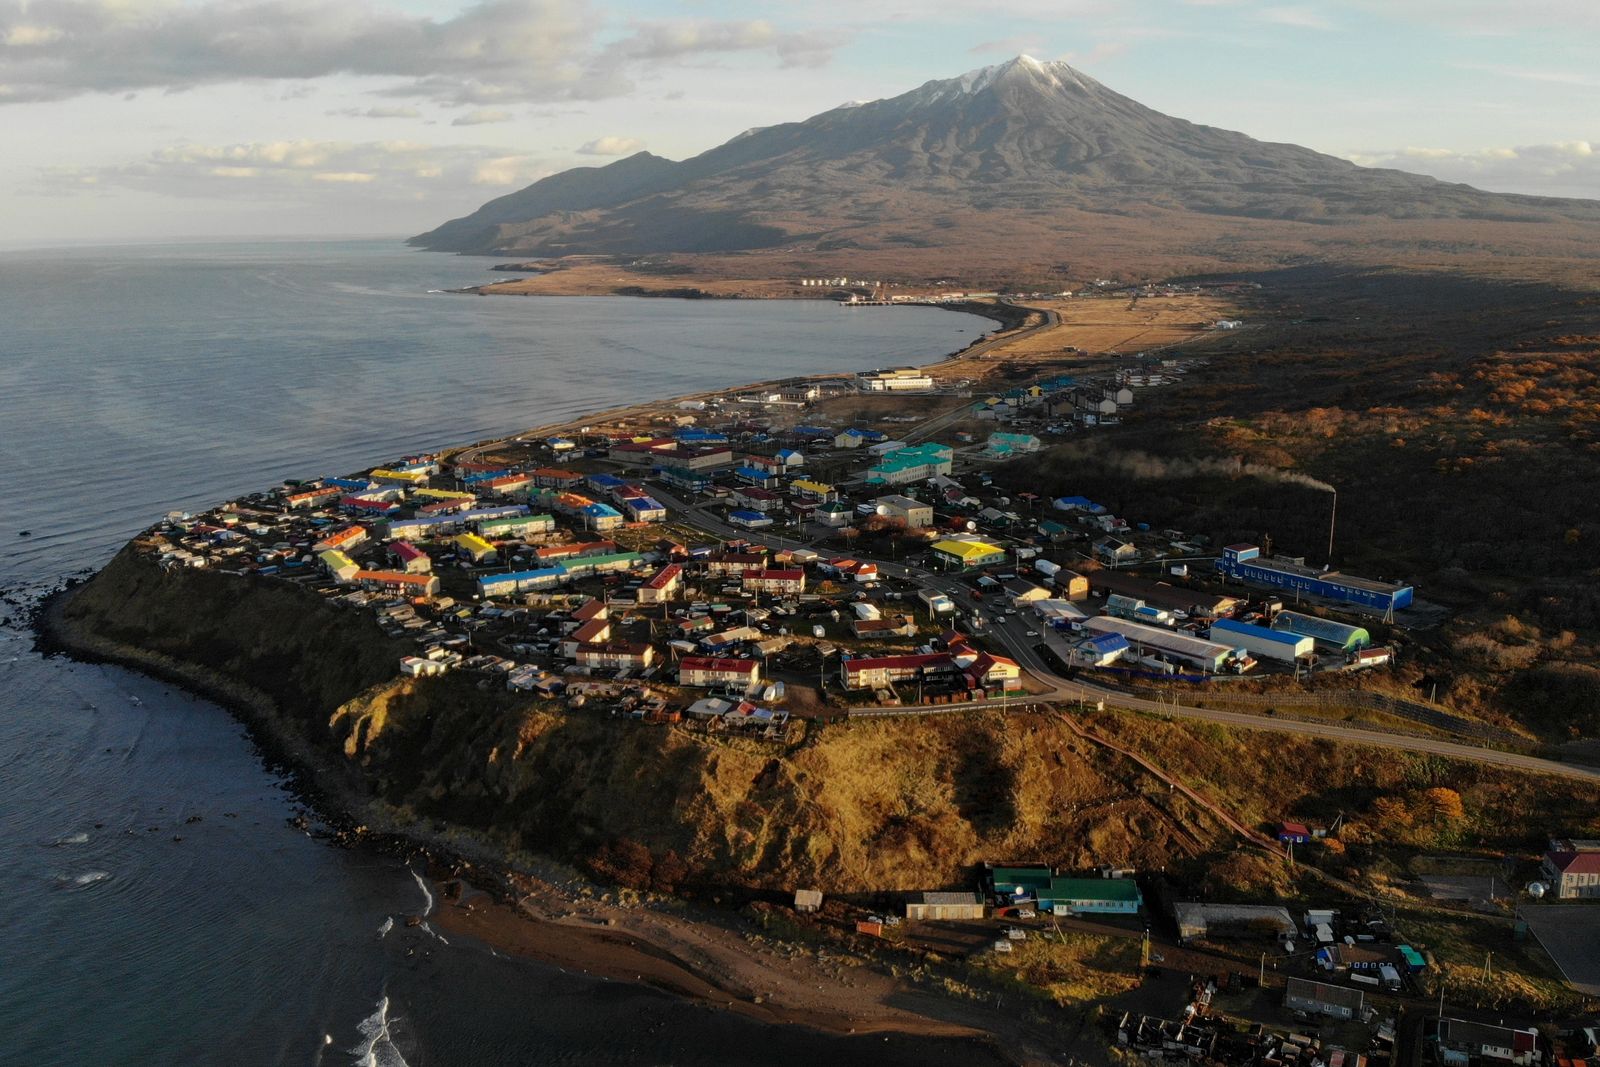 جزيرة كوريلسك الجنوبية واحدة من جزر الكوريل المتنازع عليها بين روسيا واليابان - 8 نوفمبر 2018 - Getty Images